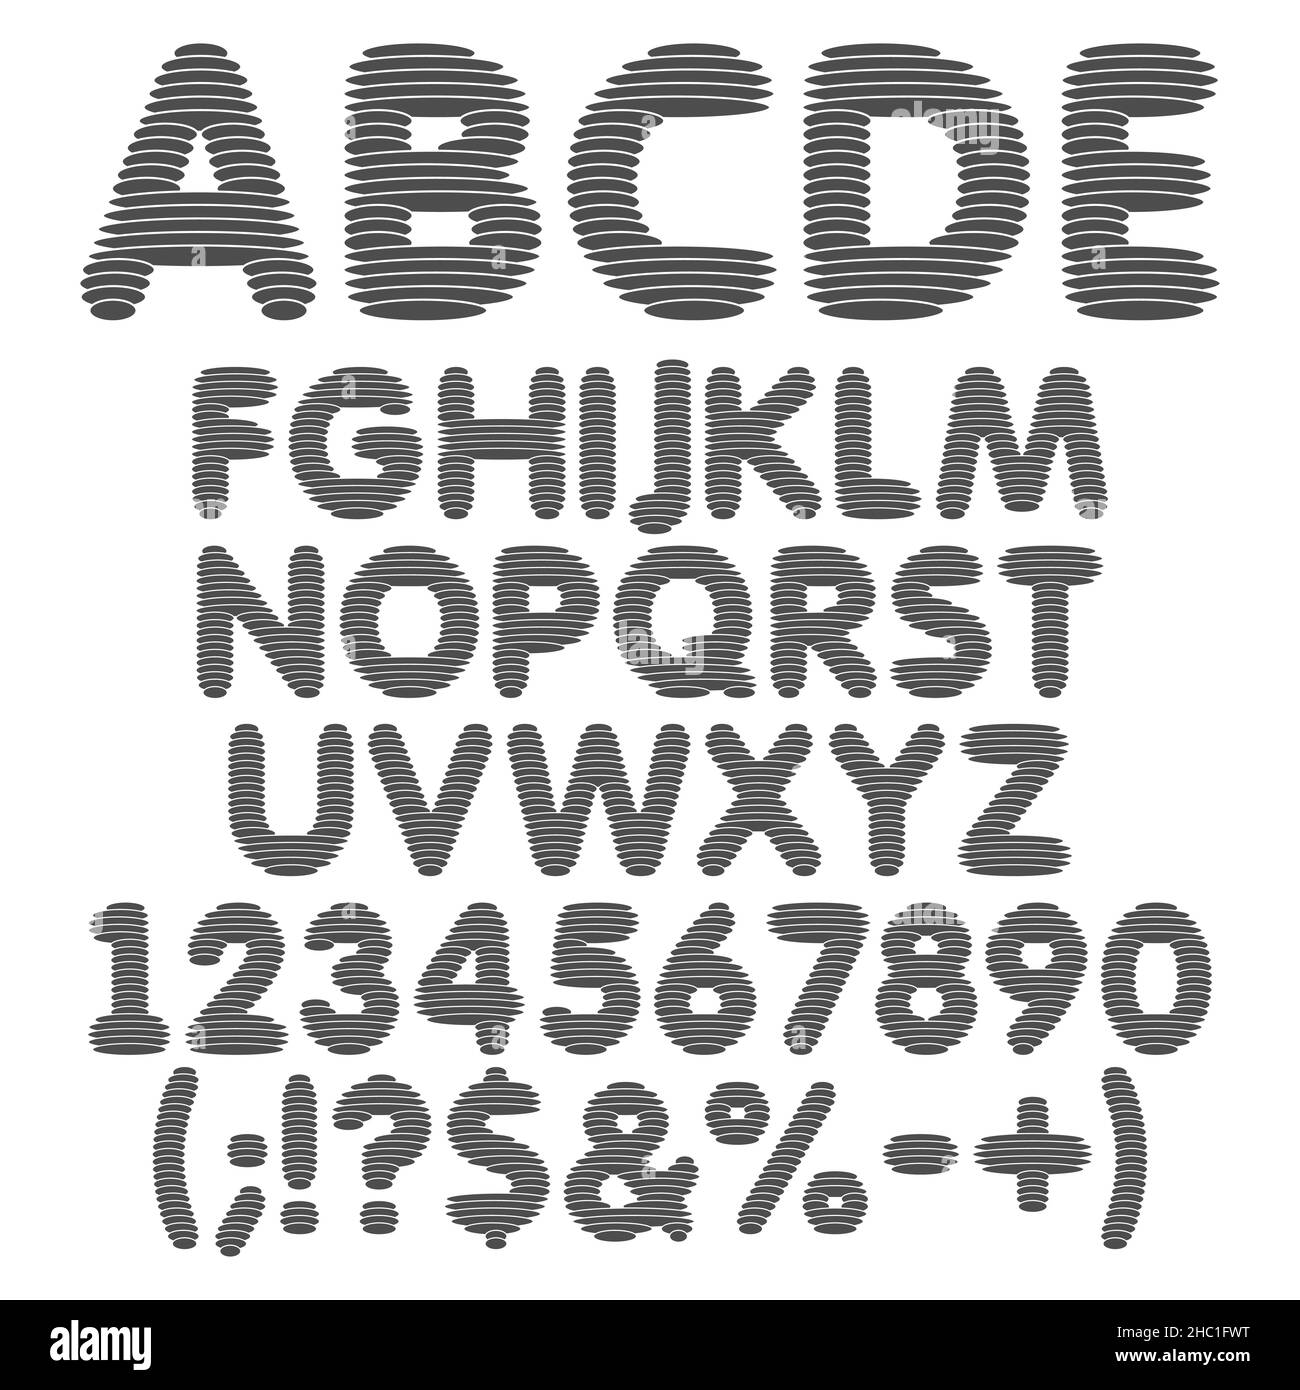 Alfabeto bianco e nero, lettere, numeri e segni da strati rotondi. Insieme di oggetti isolati vettoriali su sfondo bianco. Illustrazione Vettoriale